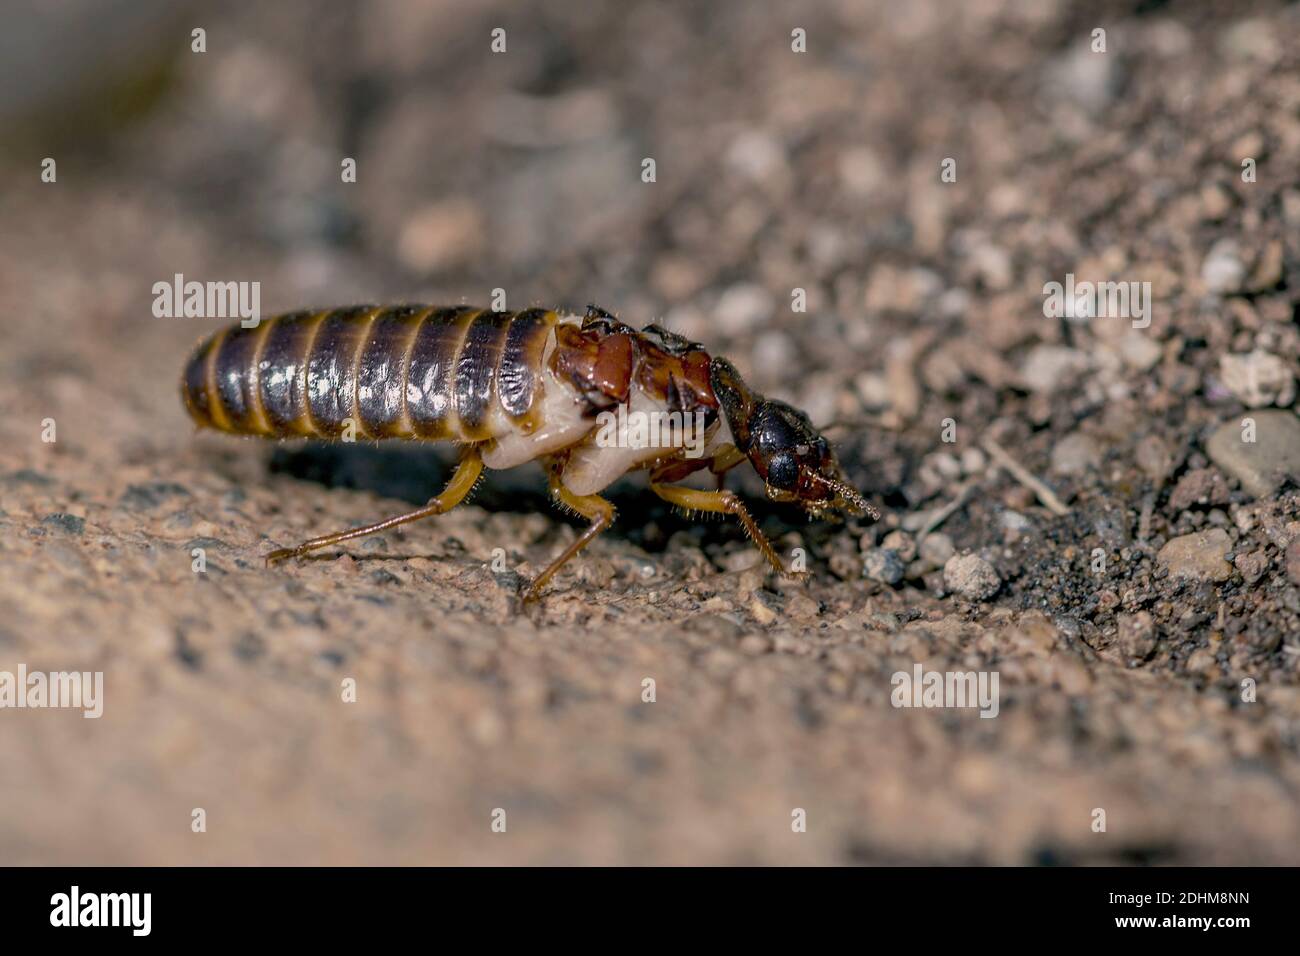 Termite (Odontotermes sp.), die kurz nach dem Schwärmen ihre Flügel verloren hat (< 24 Stunden) und nun einen Partner sucht. Zimanga Stockfoto